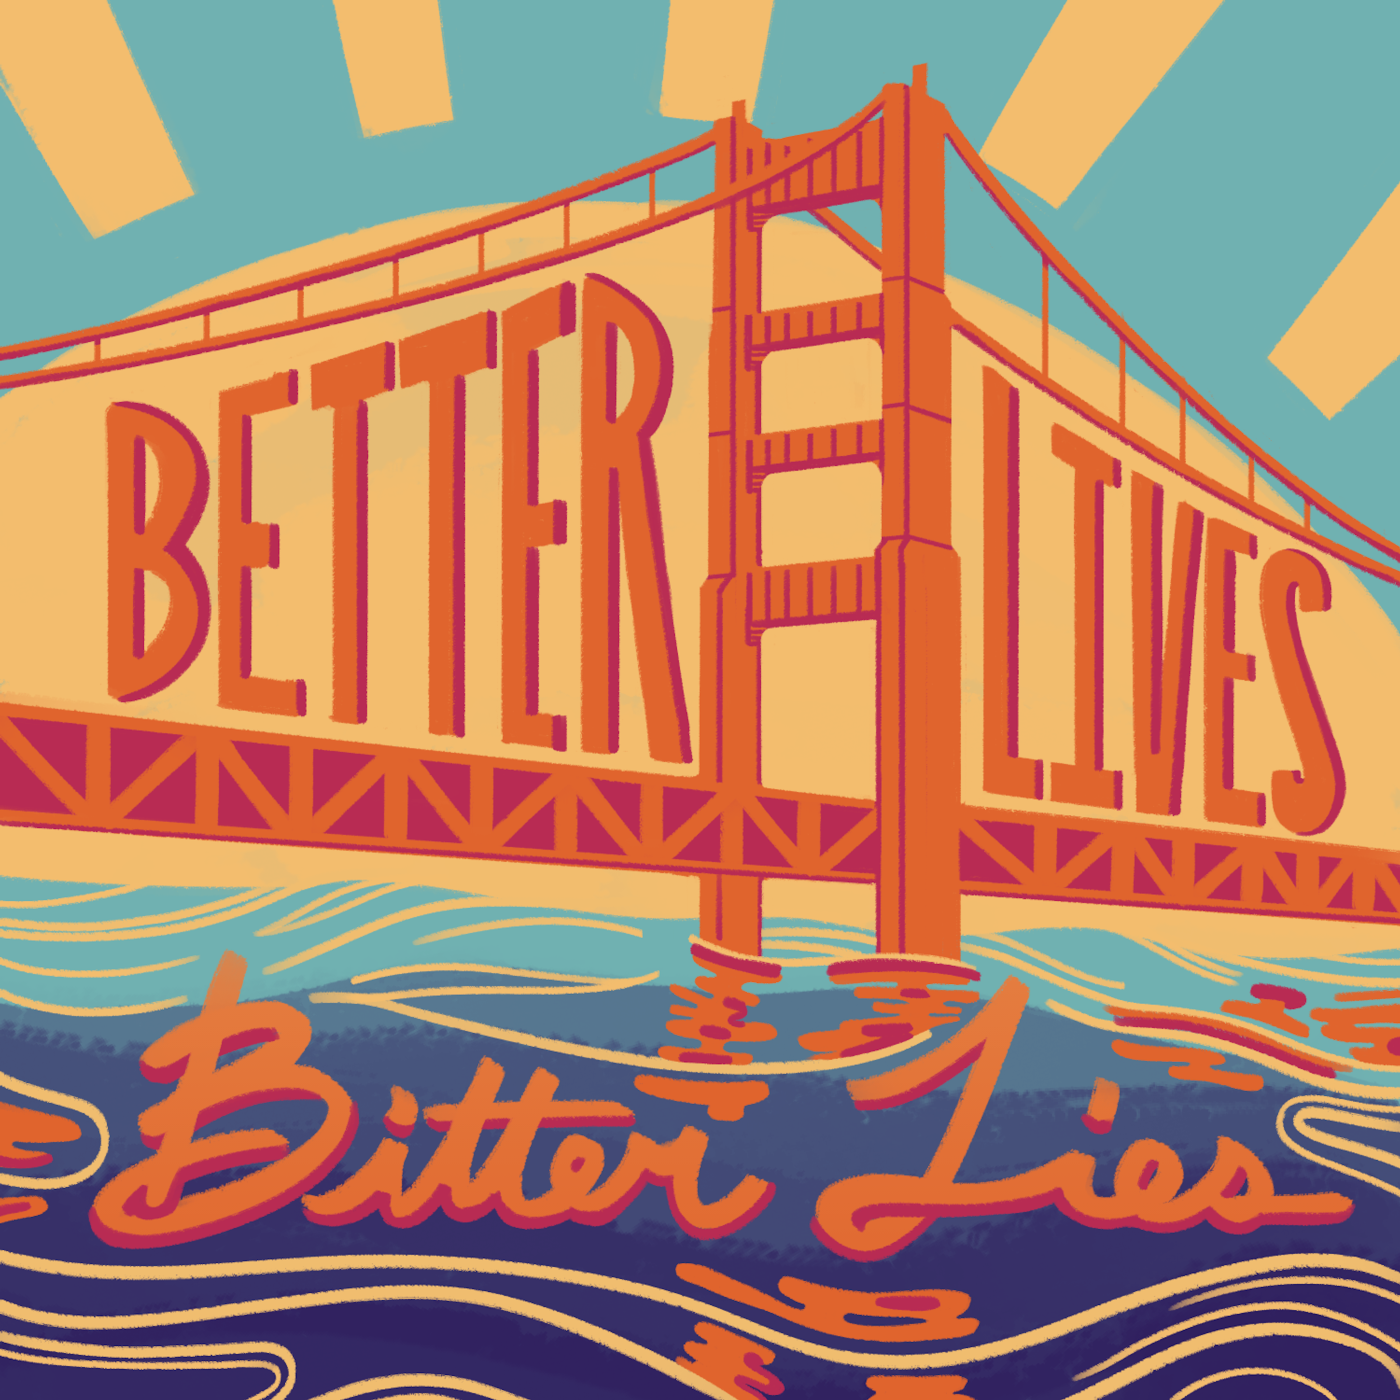 Better Lives, Bitter Lies (U.S. National Park Service)